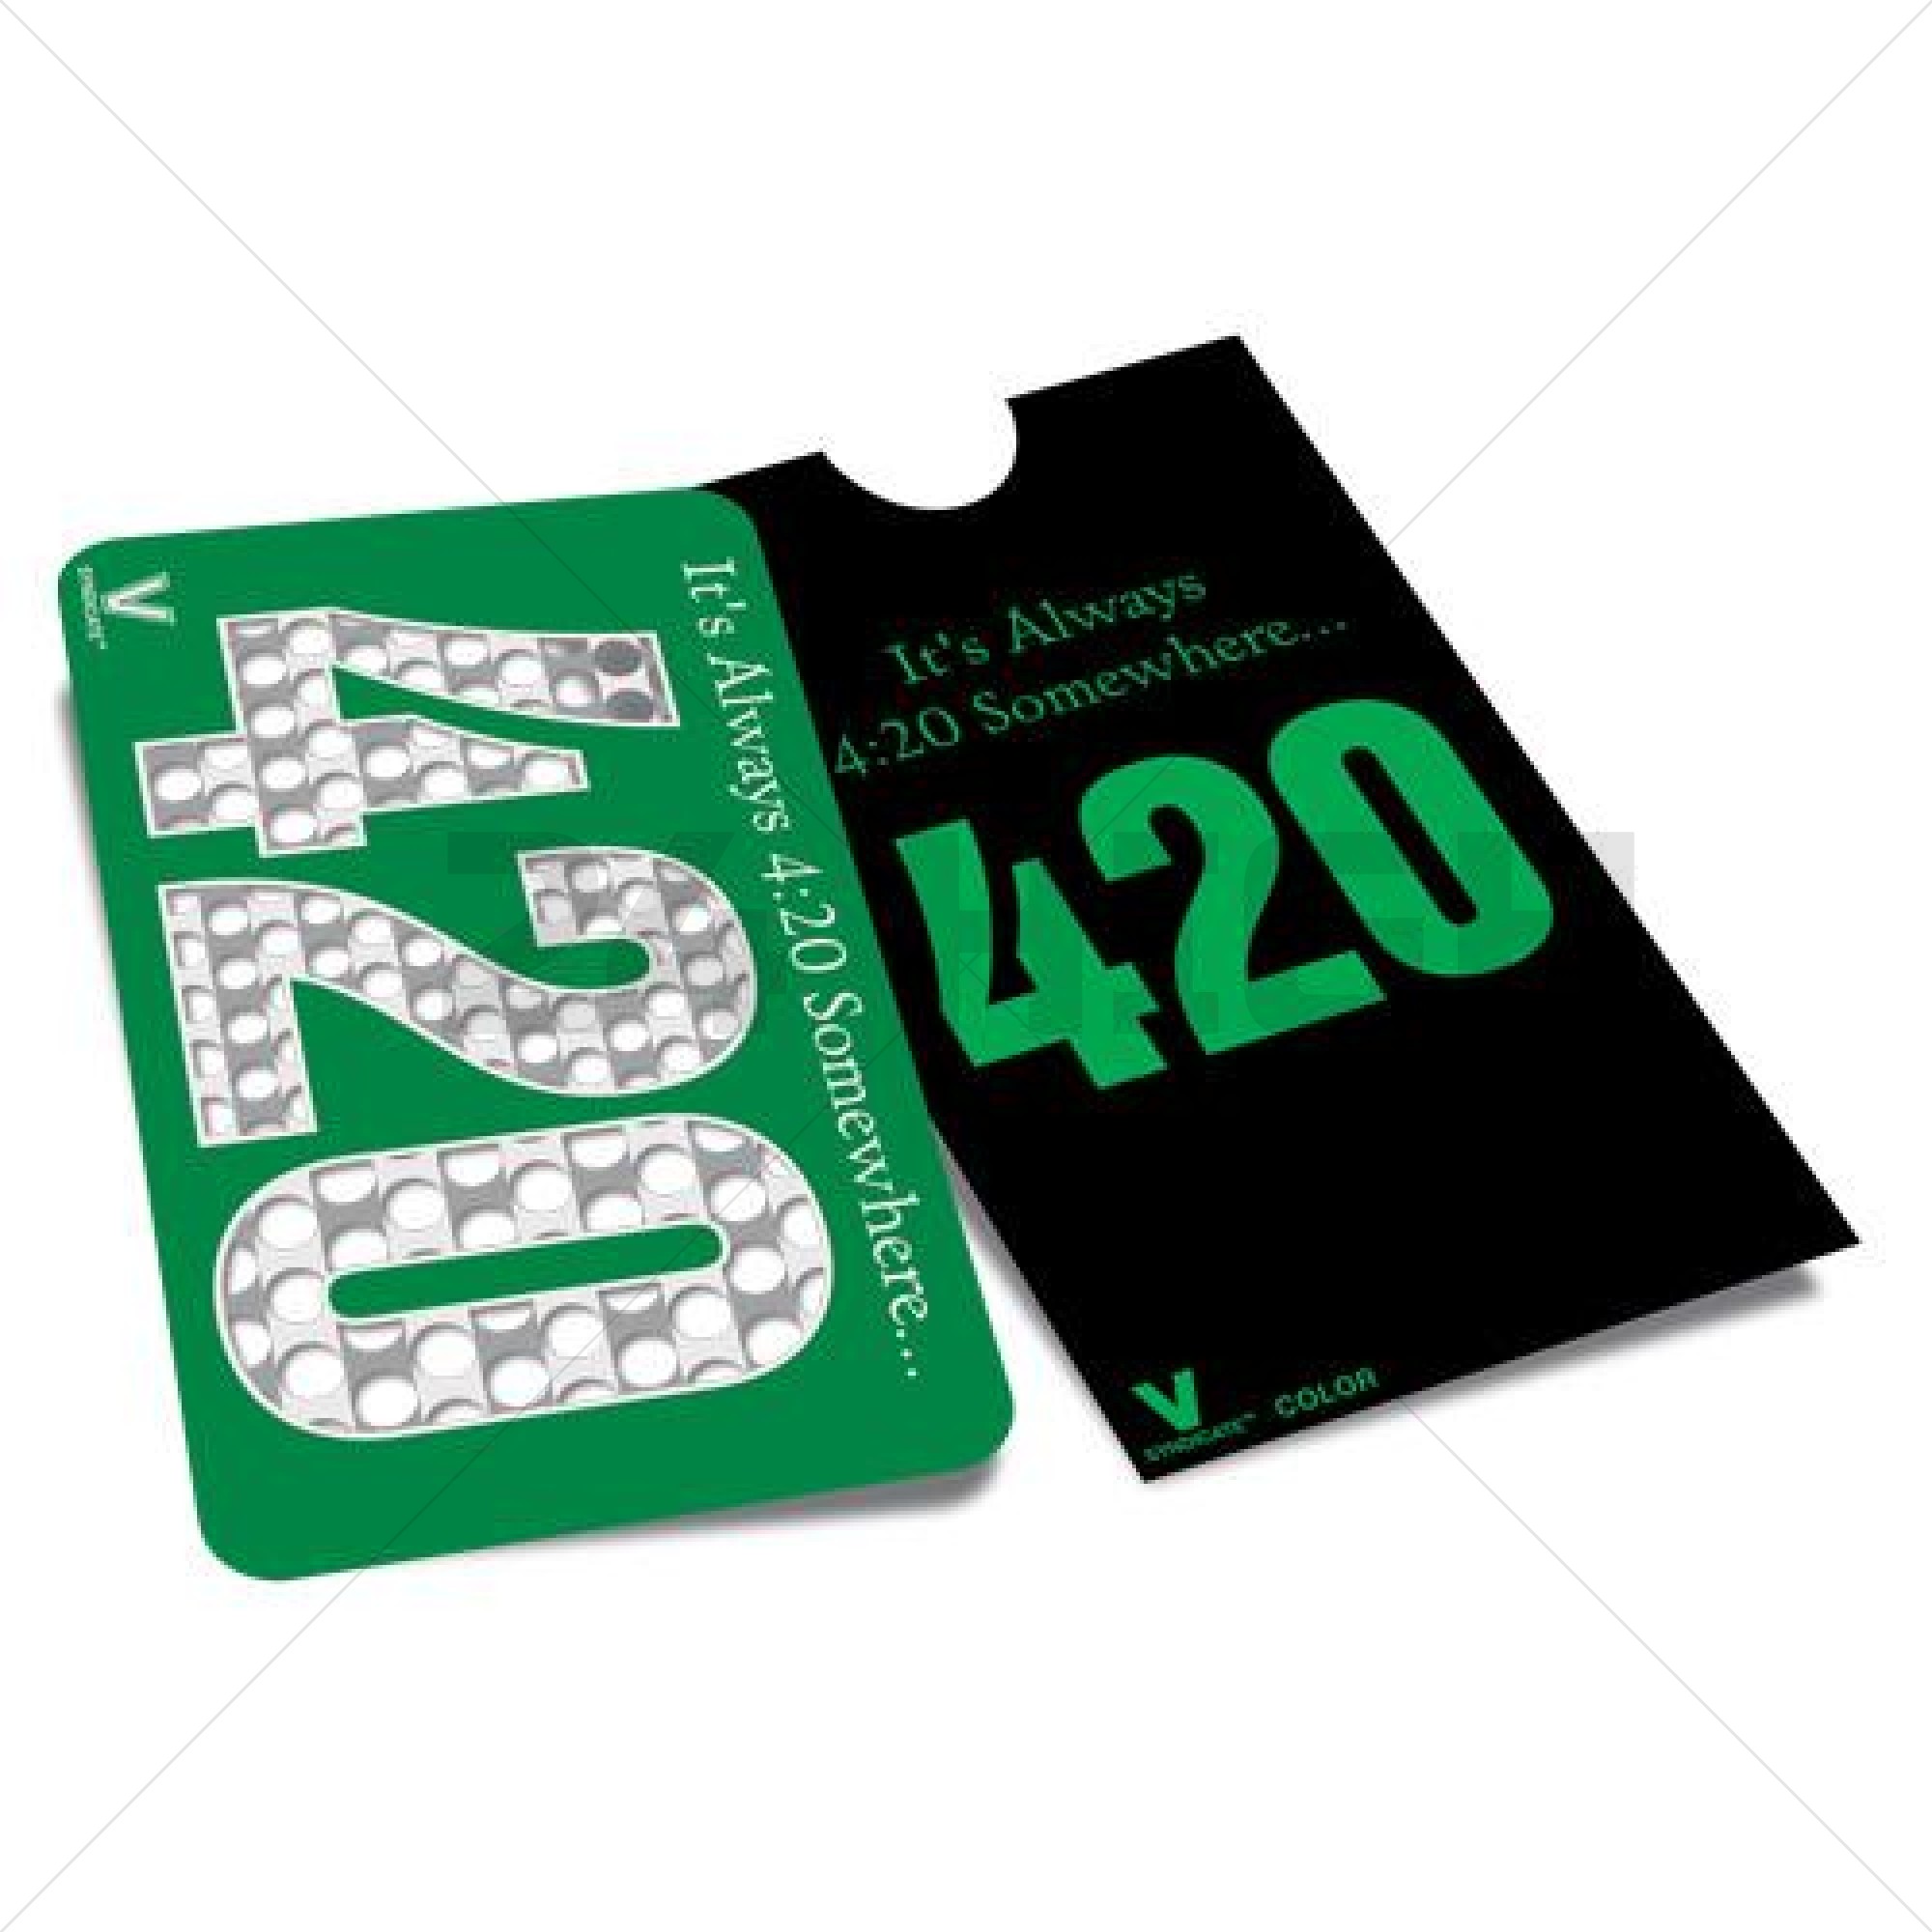 Credit Card Grinder 420